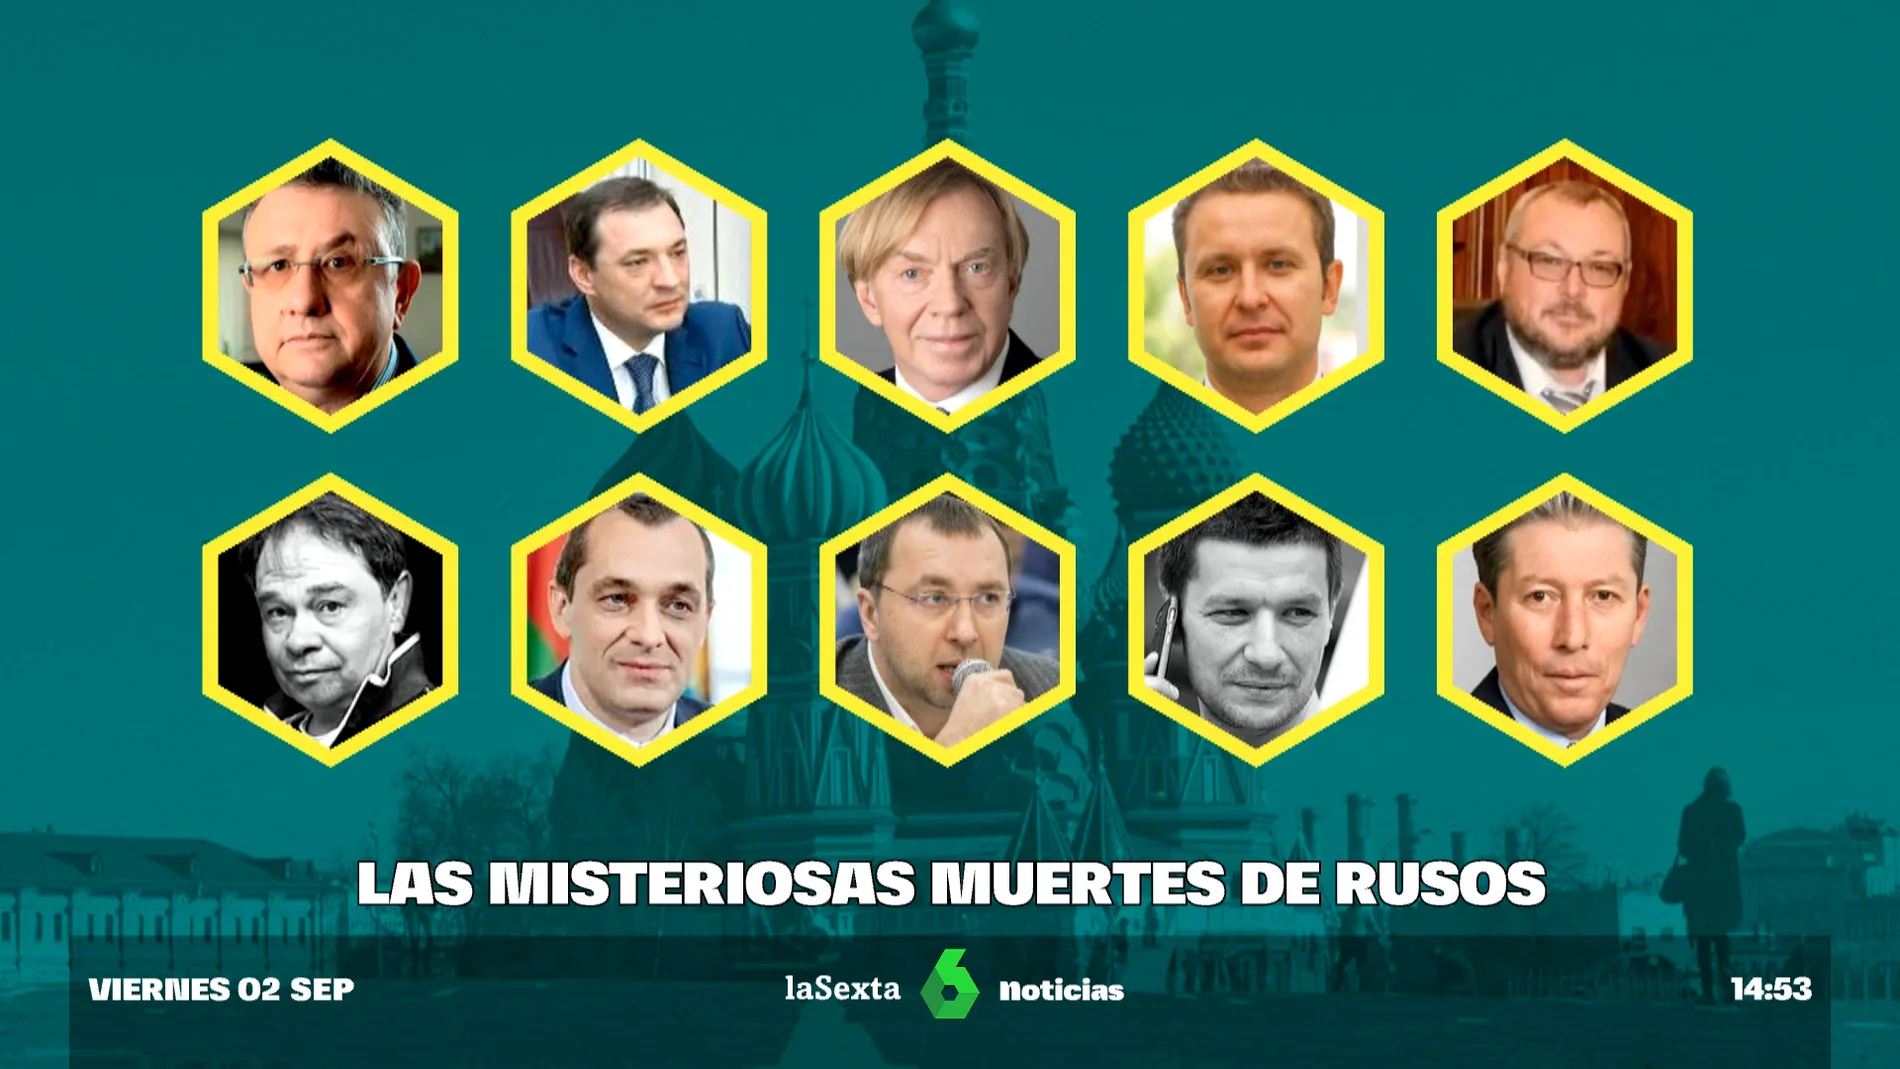 Esta es la lista de oligarcas rusos muertos de forma sospechosa desde el inicio de la invasión a Ucrania